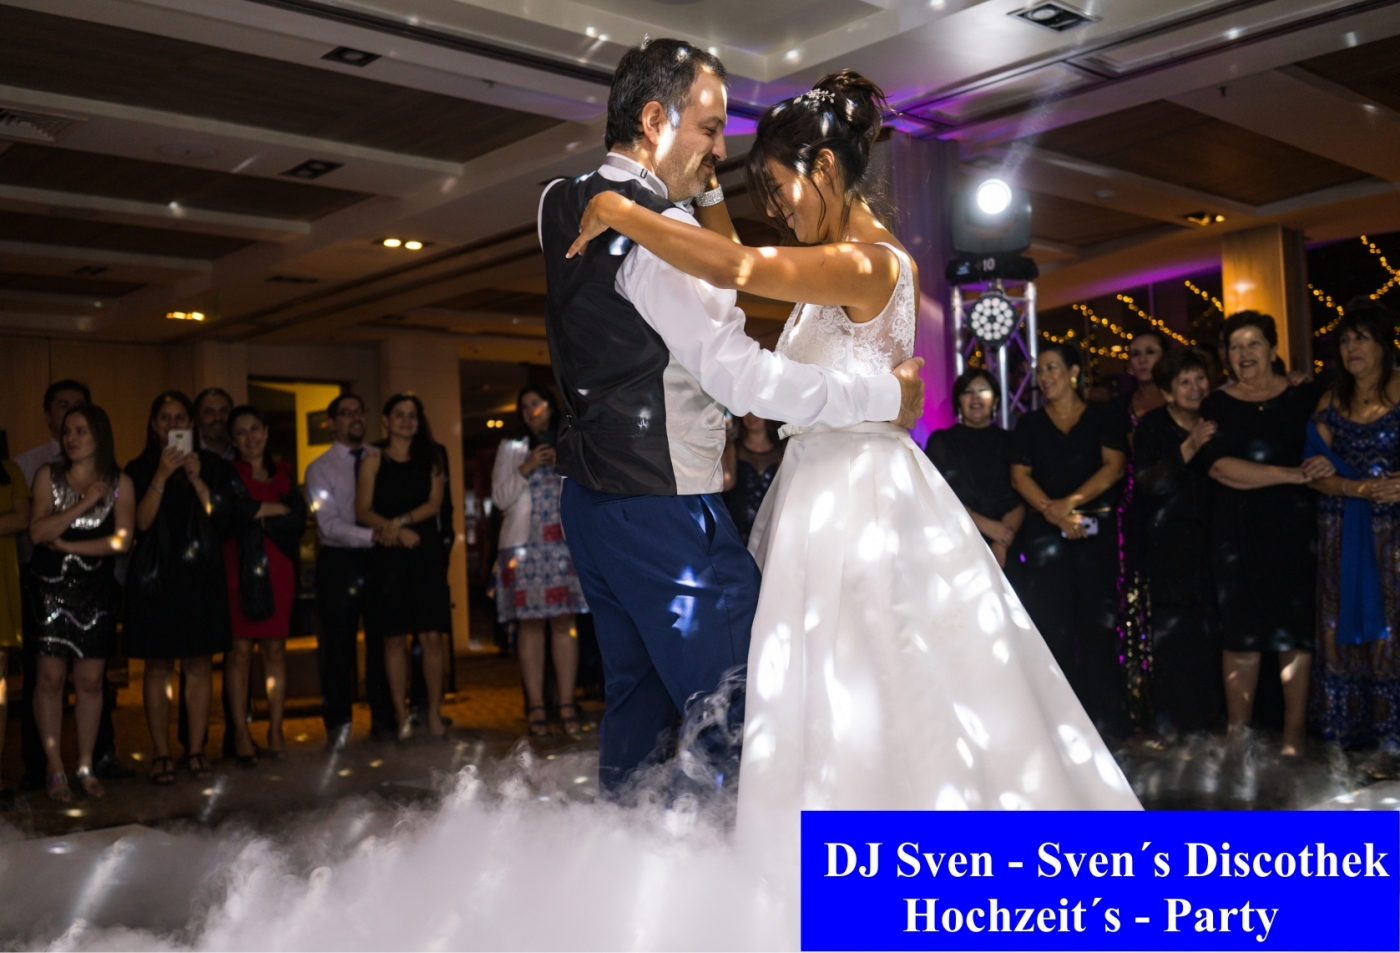 Braut im Hochzeitskleid und Bräutigam tanzen ihren Eröffnungstanz während der Hochzeitsfeier, umgeben von Gästen.